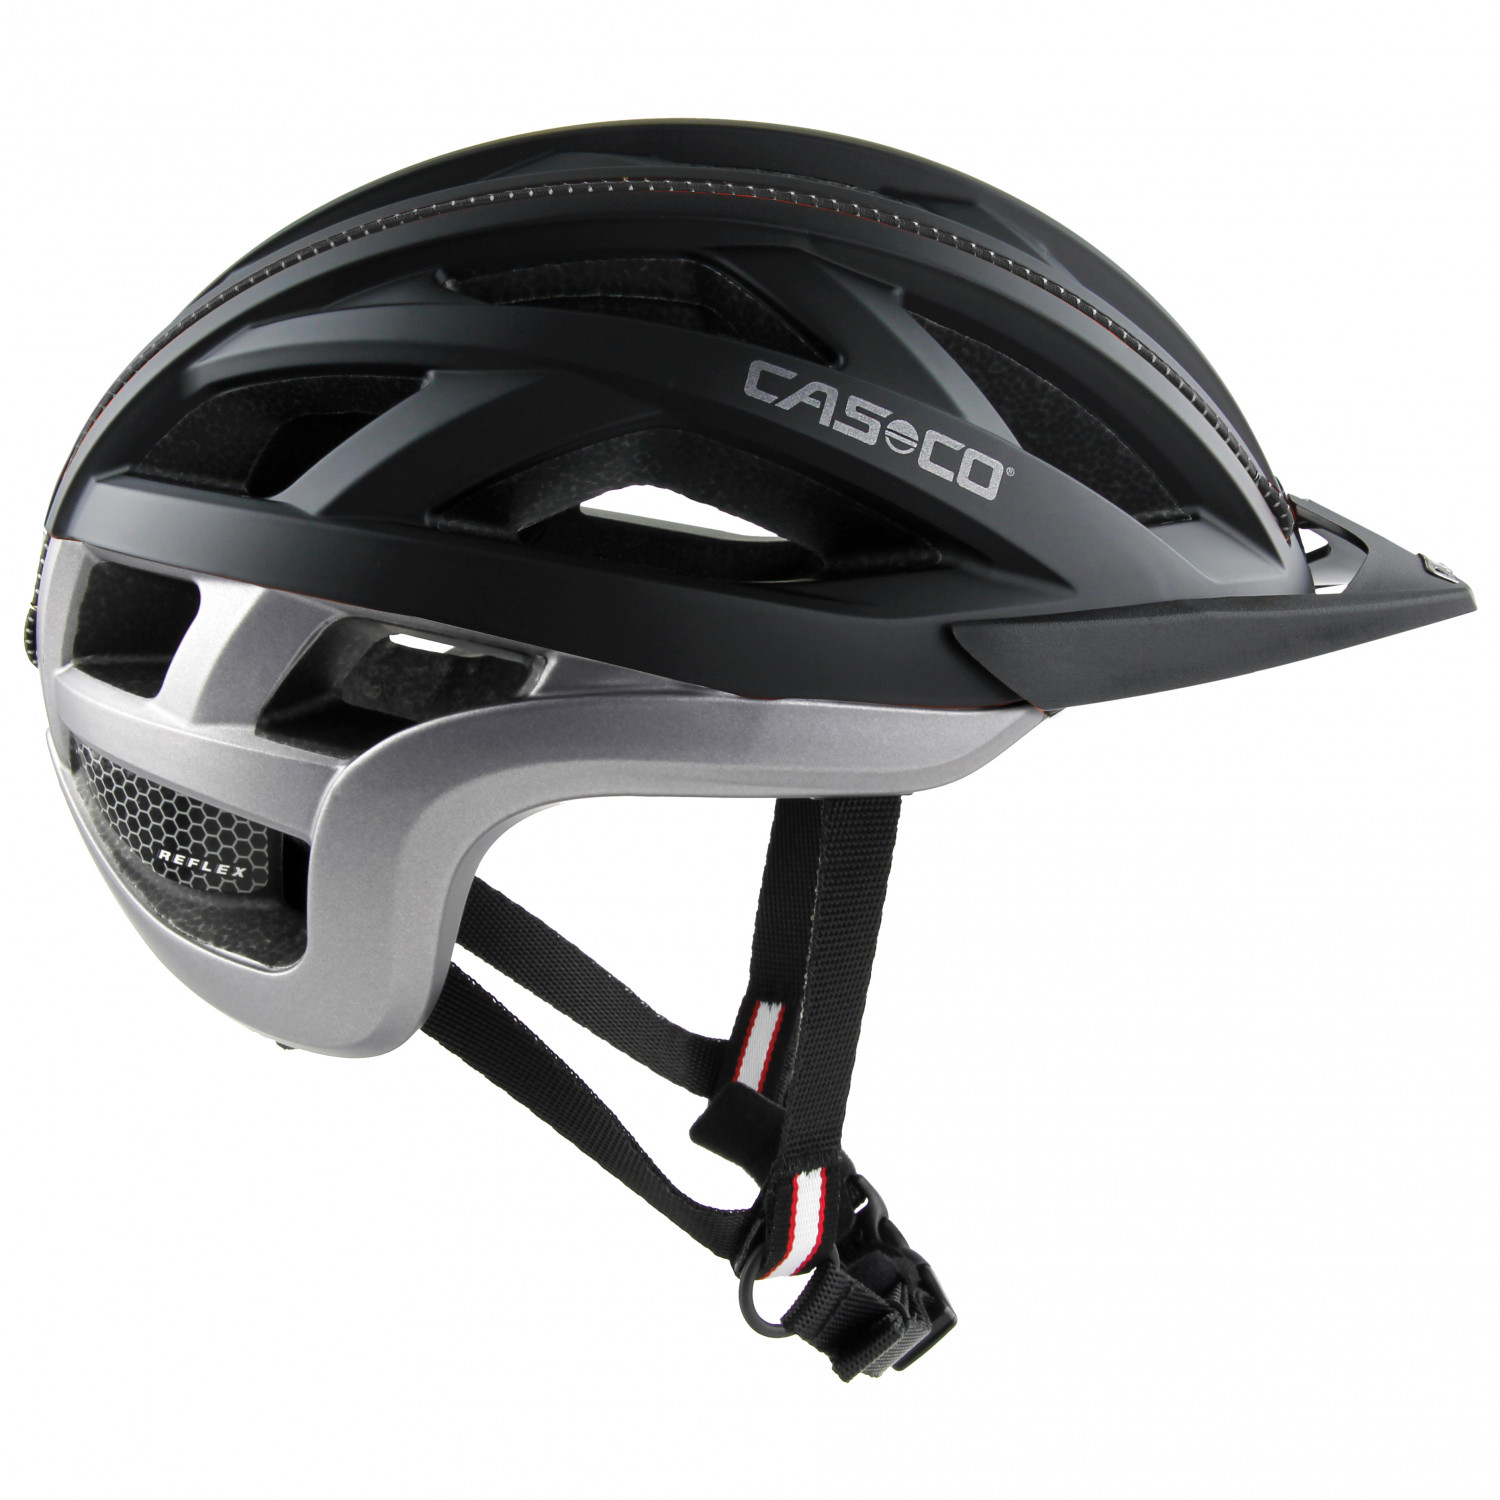 Велосипедный шлем Casco Cuda 2, цвет Black Anthracite Matt шлем casco cuda 2